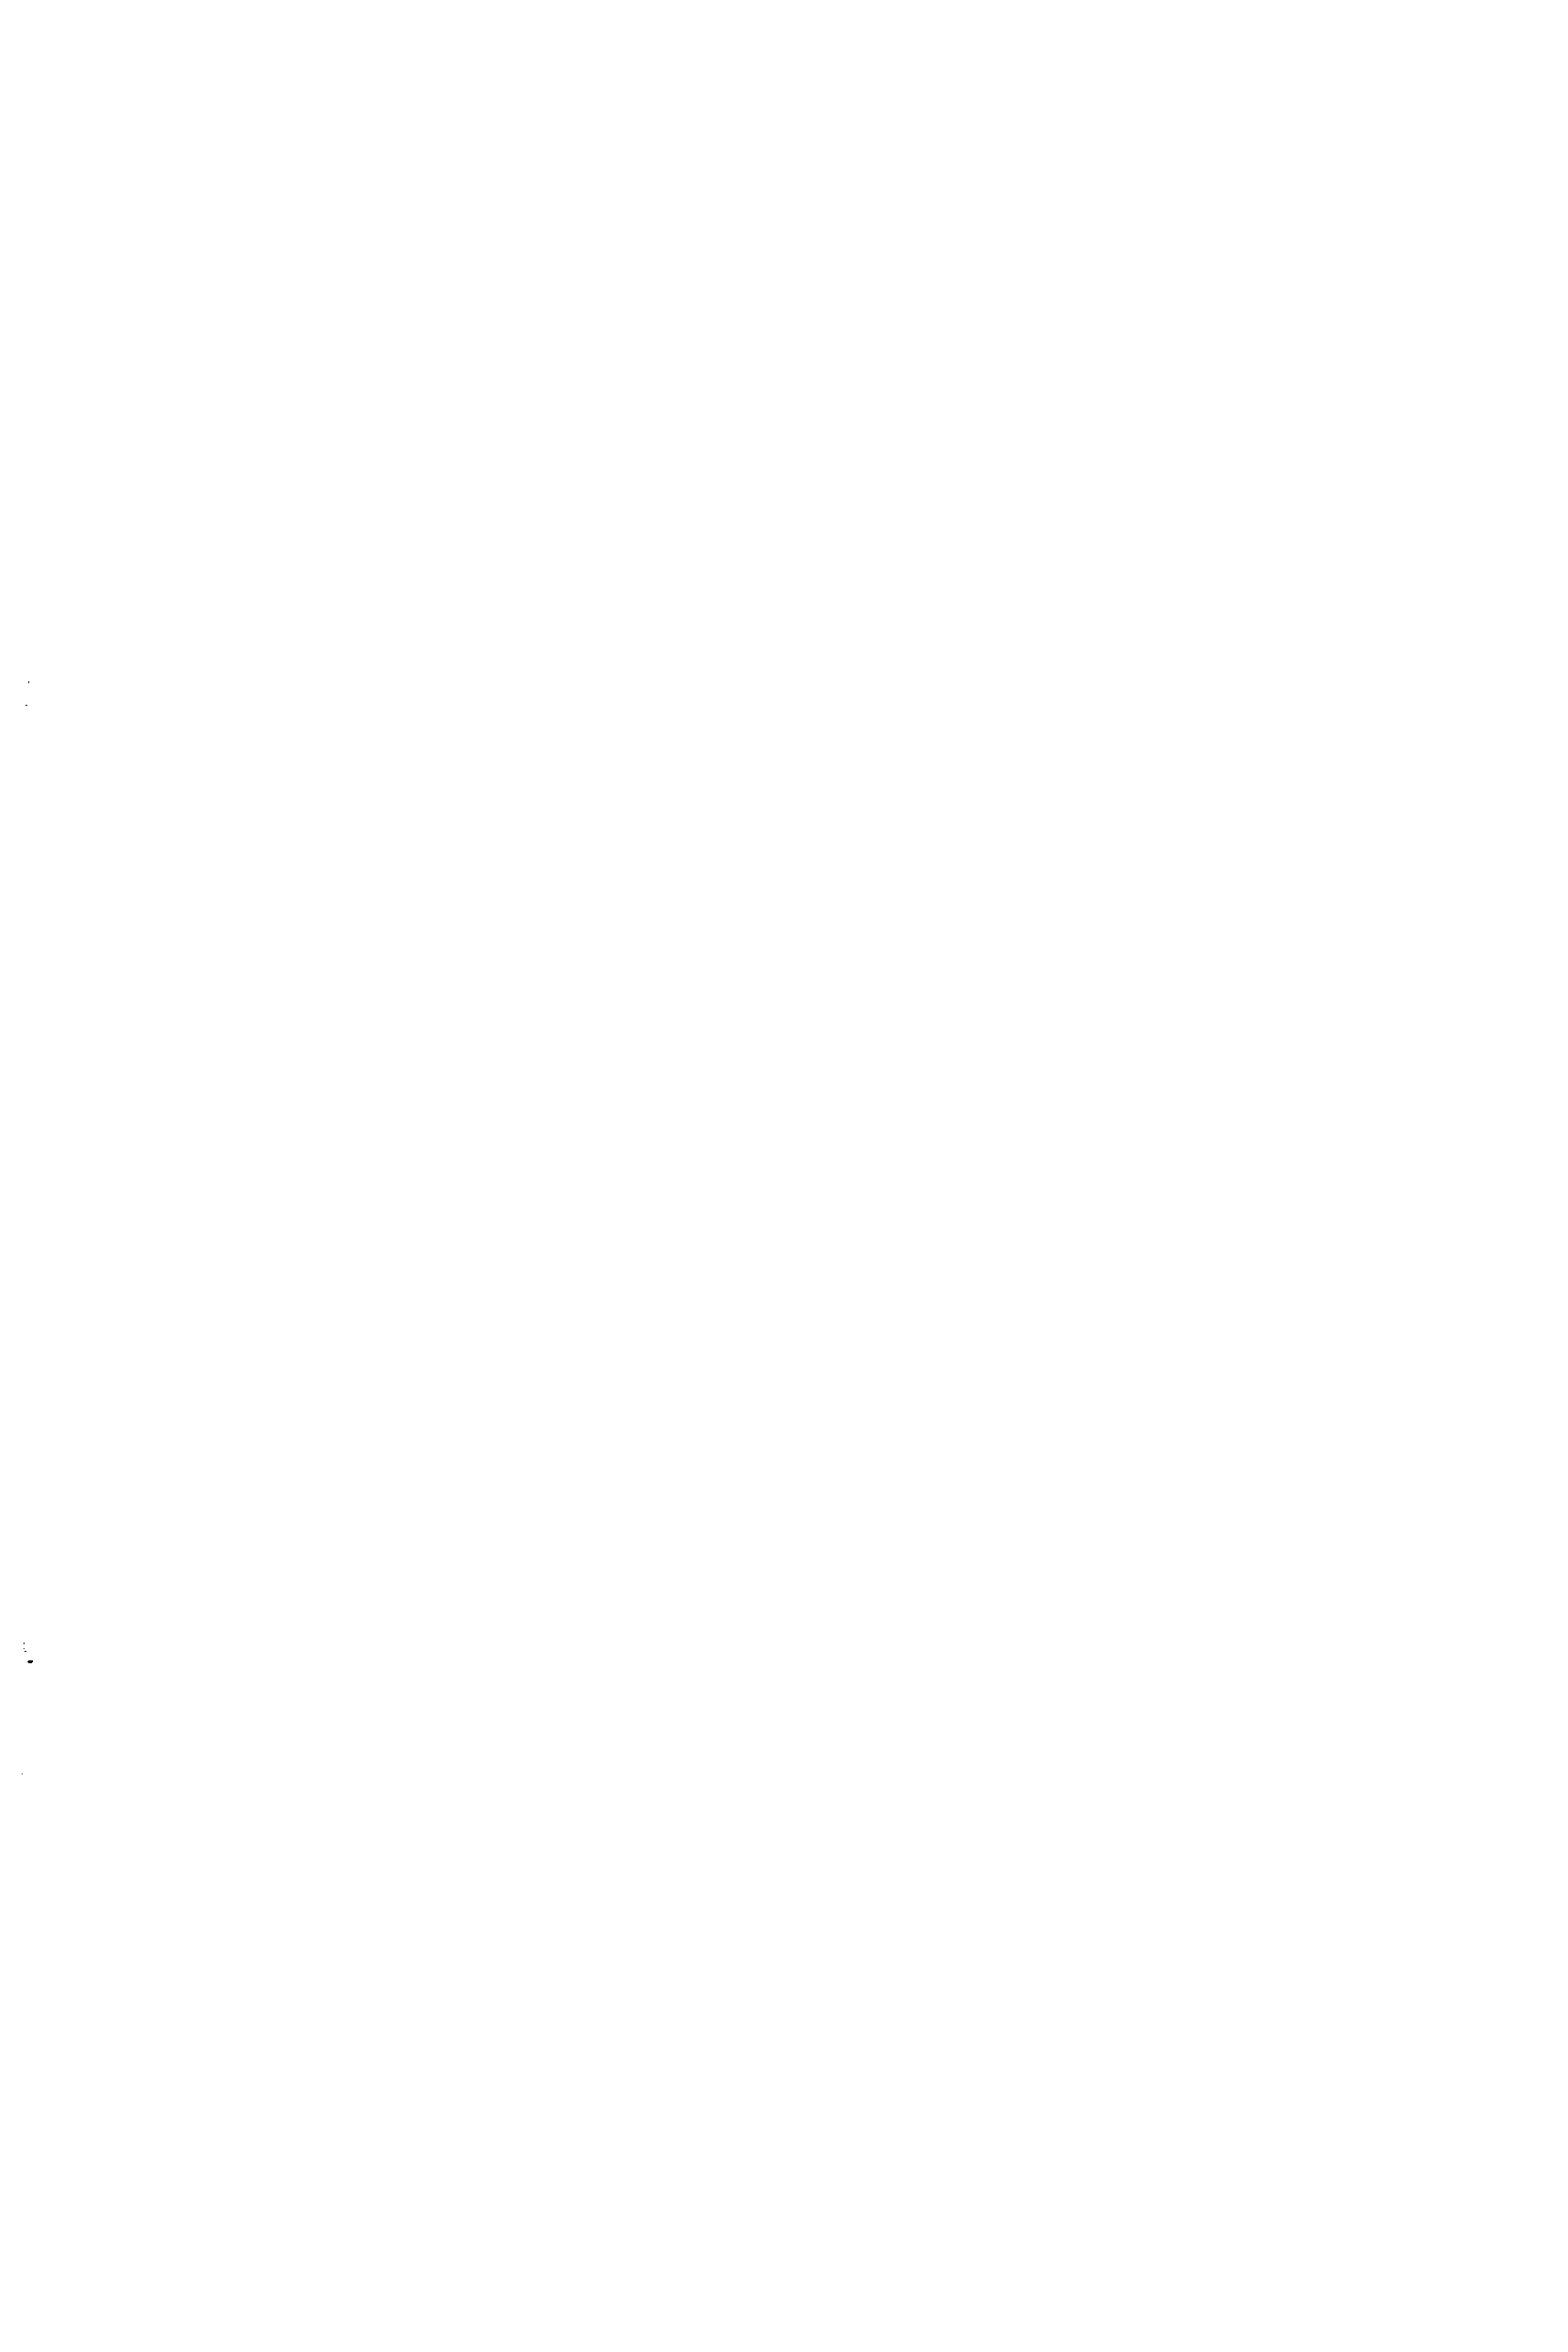 Рис. 10.7. Электроды сравнения н капилляры Электрод сравнения, солевой мостик и капилляр Луггина (а), каломельный электрод (б), вид торца капилляров и нх расположение (в), тыльная сторона капилляров (г) 
